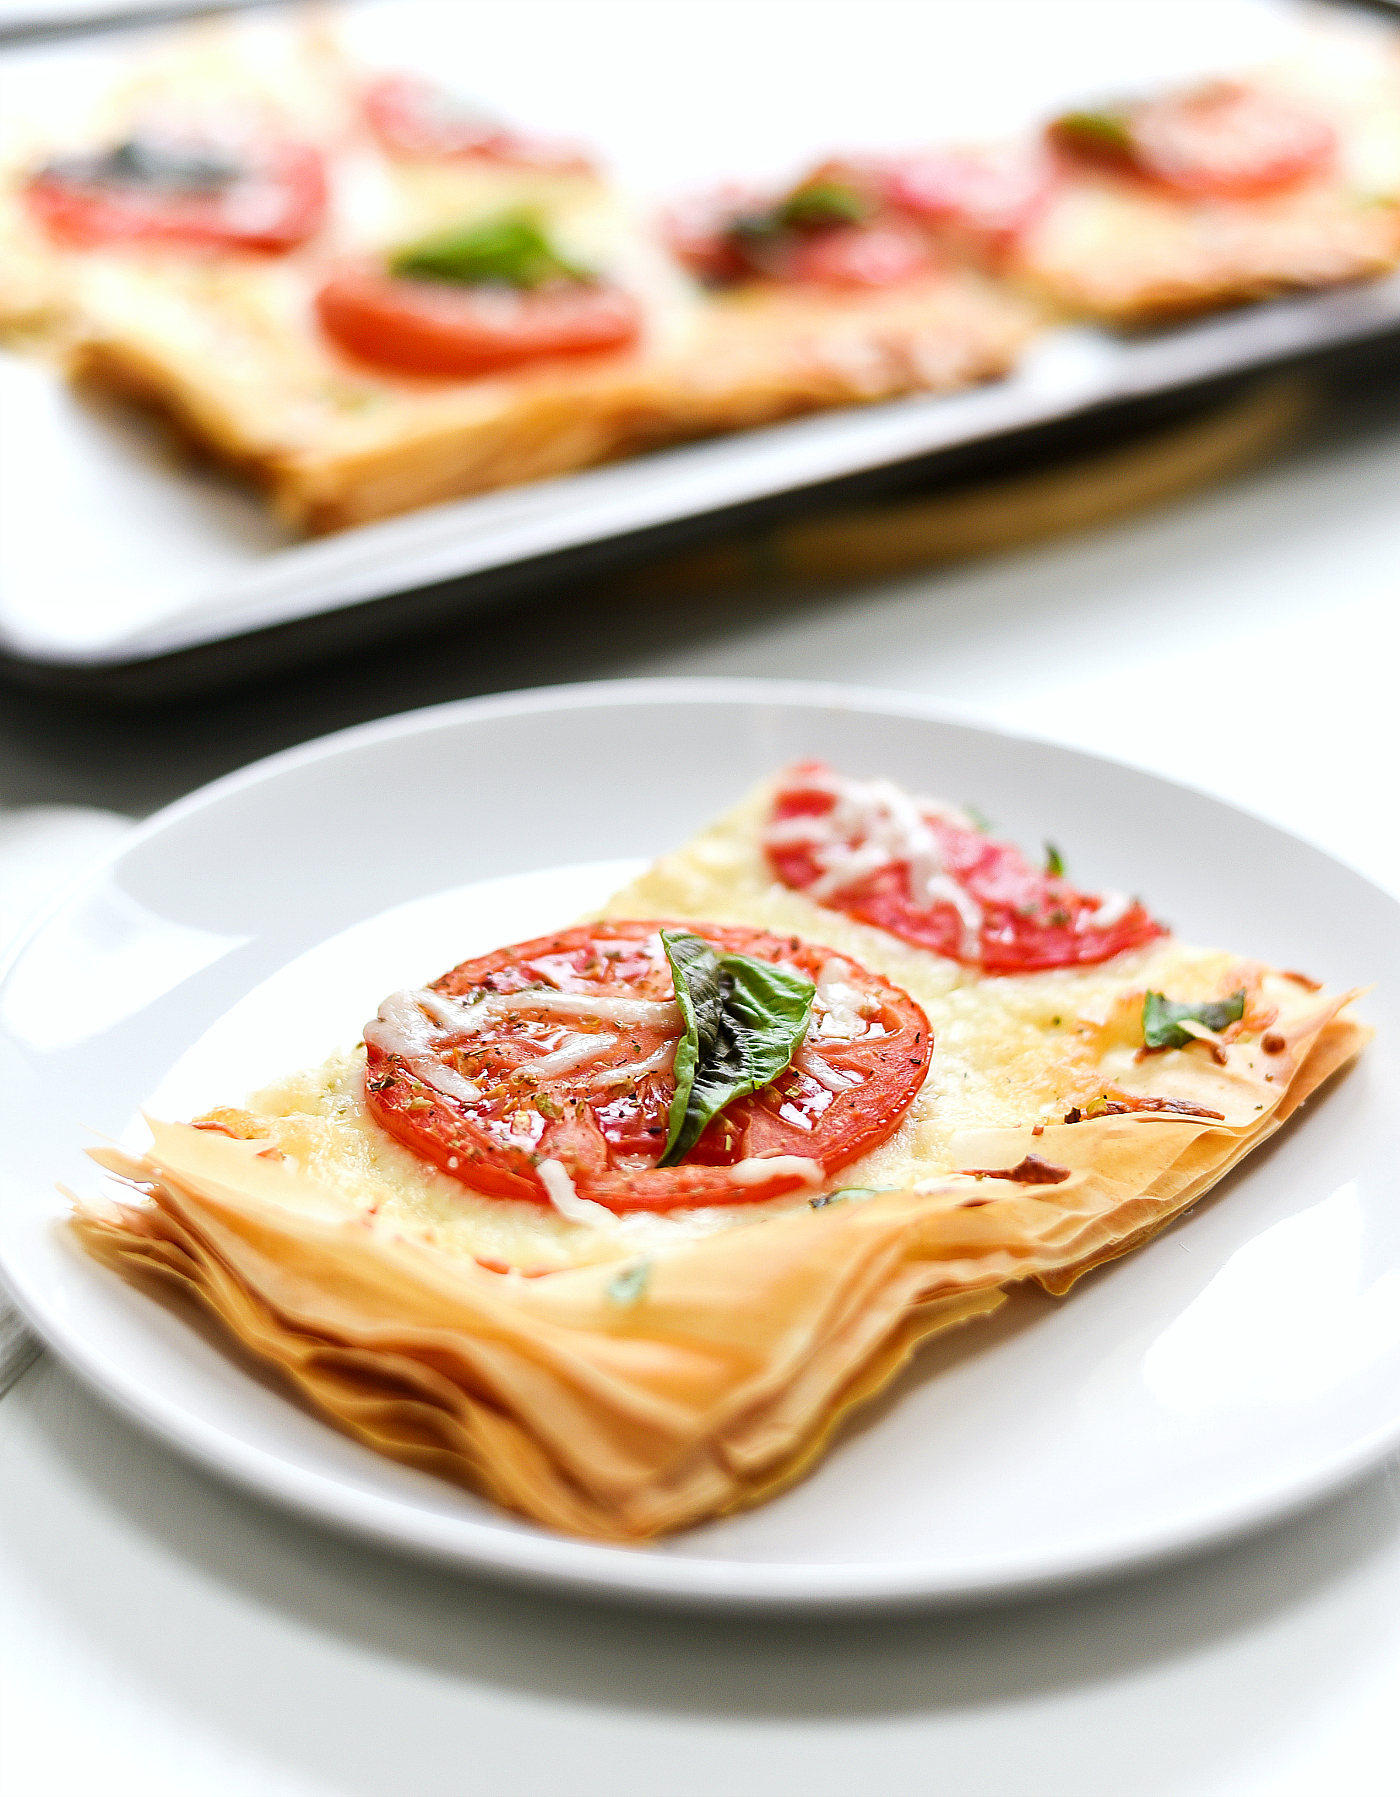 Weight Watchers Pizza - Phyllo Dough Pizza - Tomato, Mozzarella, Basil Pizza Reicpe